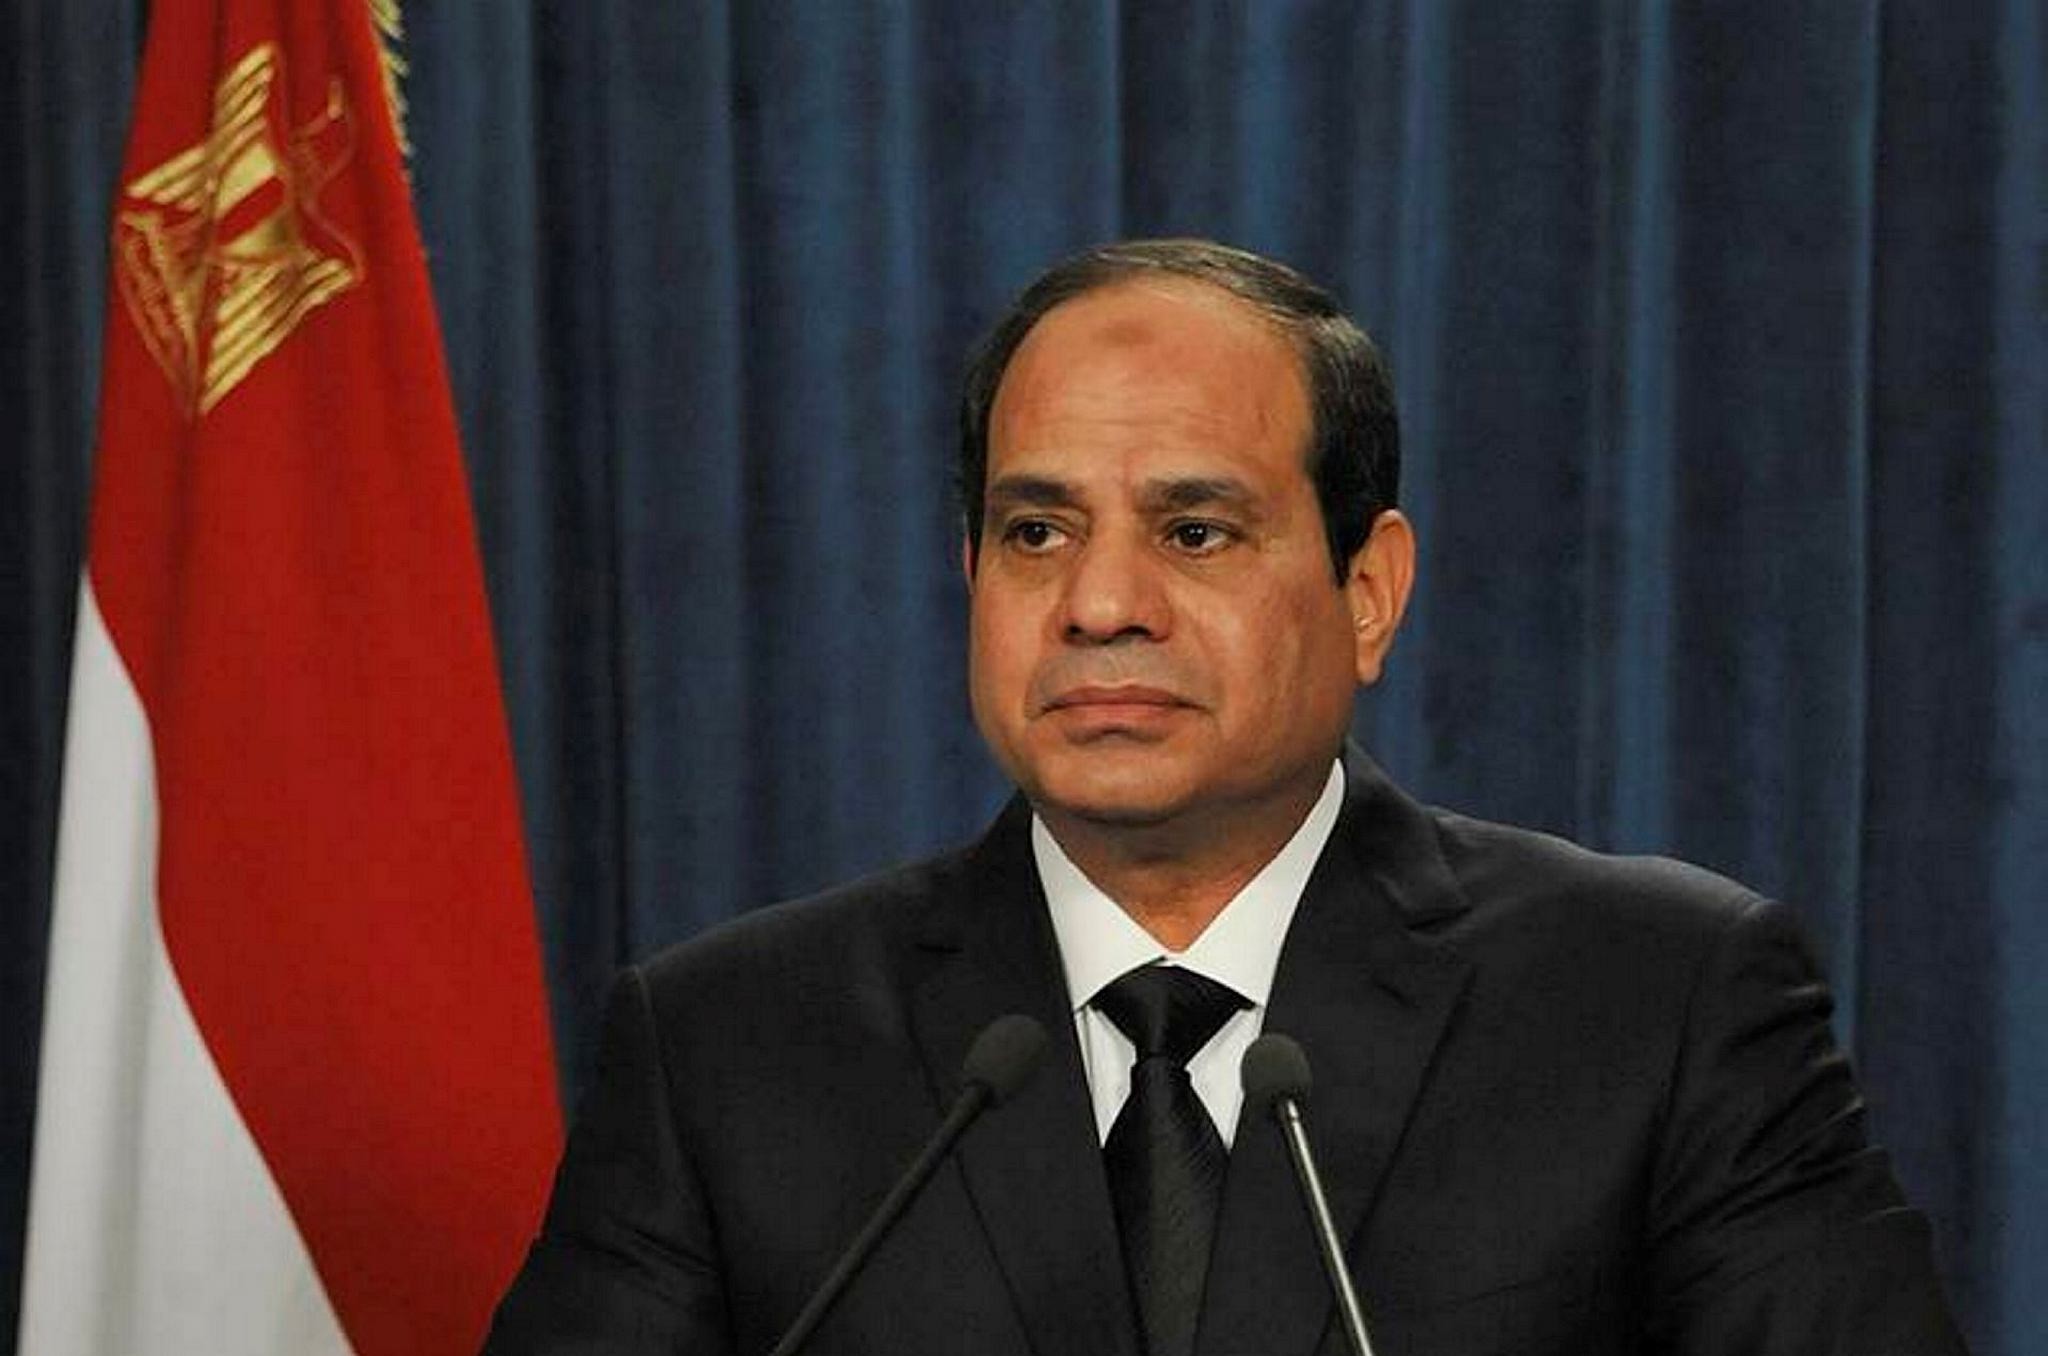 Egyptian President Abdel Fattah el-Sissi.